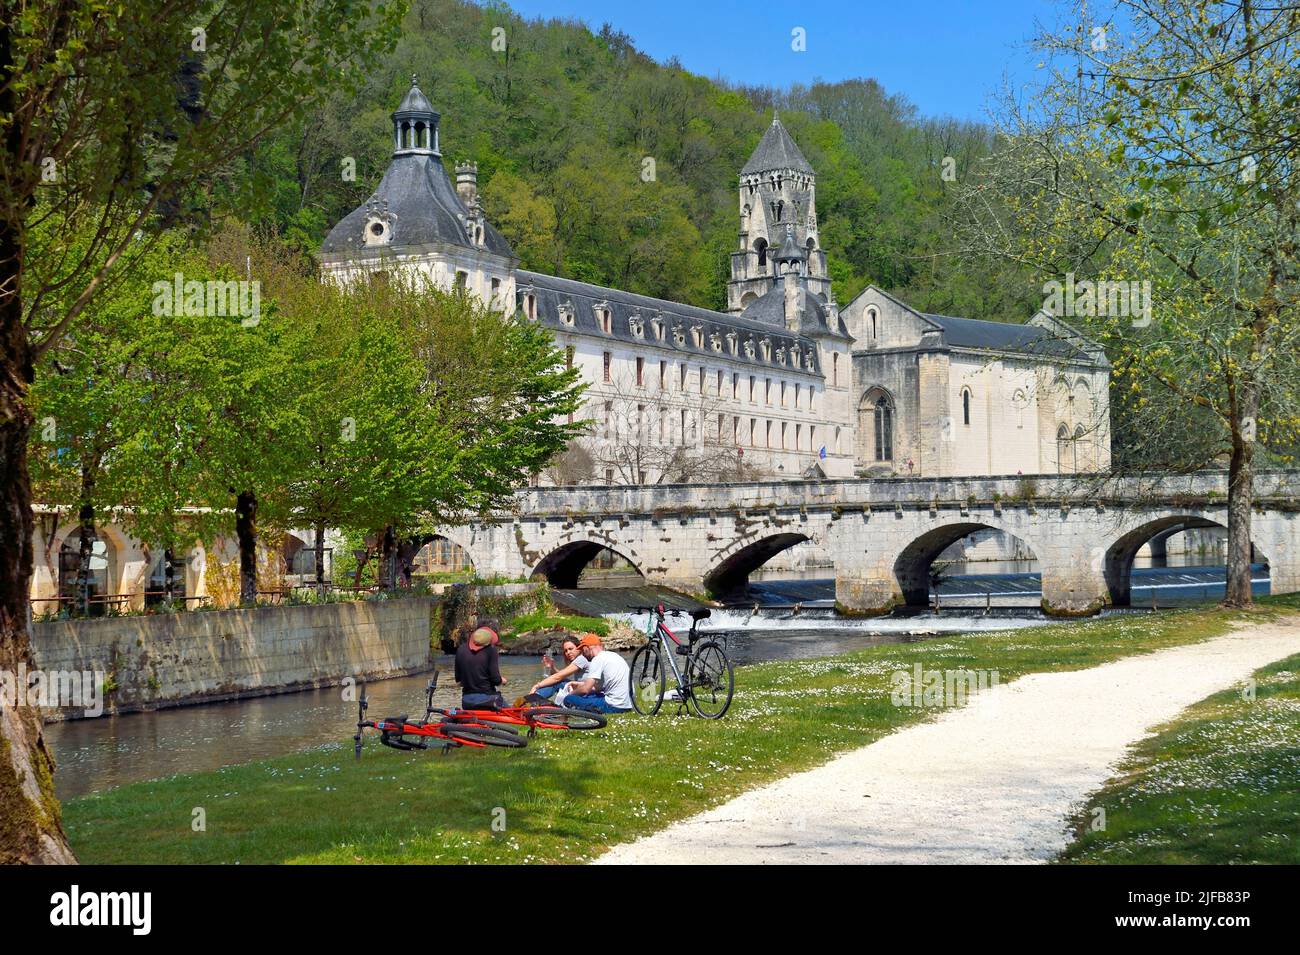 Frankreich, Dordogne, Brantome, Radfahrer picknicken im Mönchsgarten der benediktinerabtei Saint Pierre entlang des Flusses Dronne Stockfoto